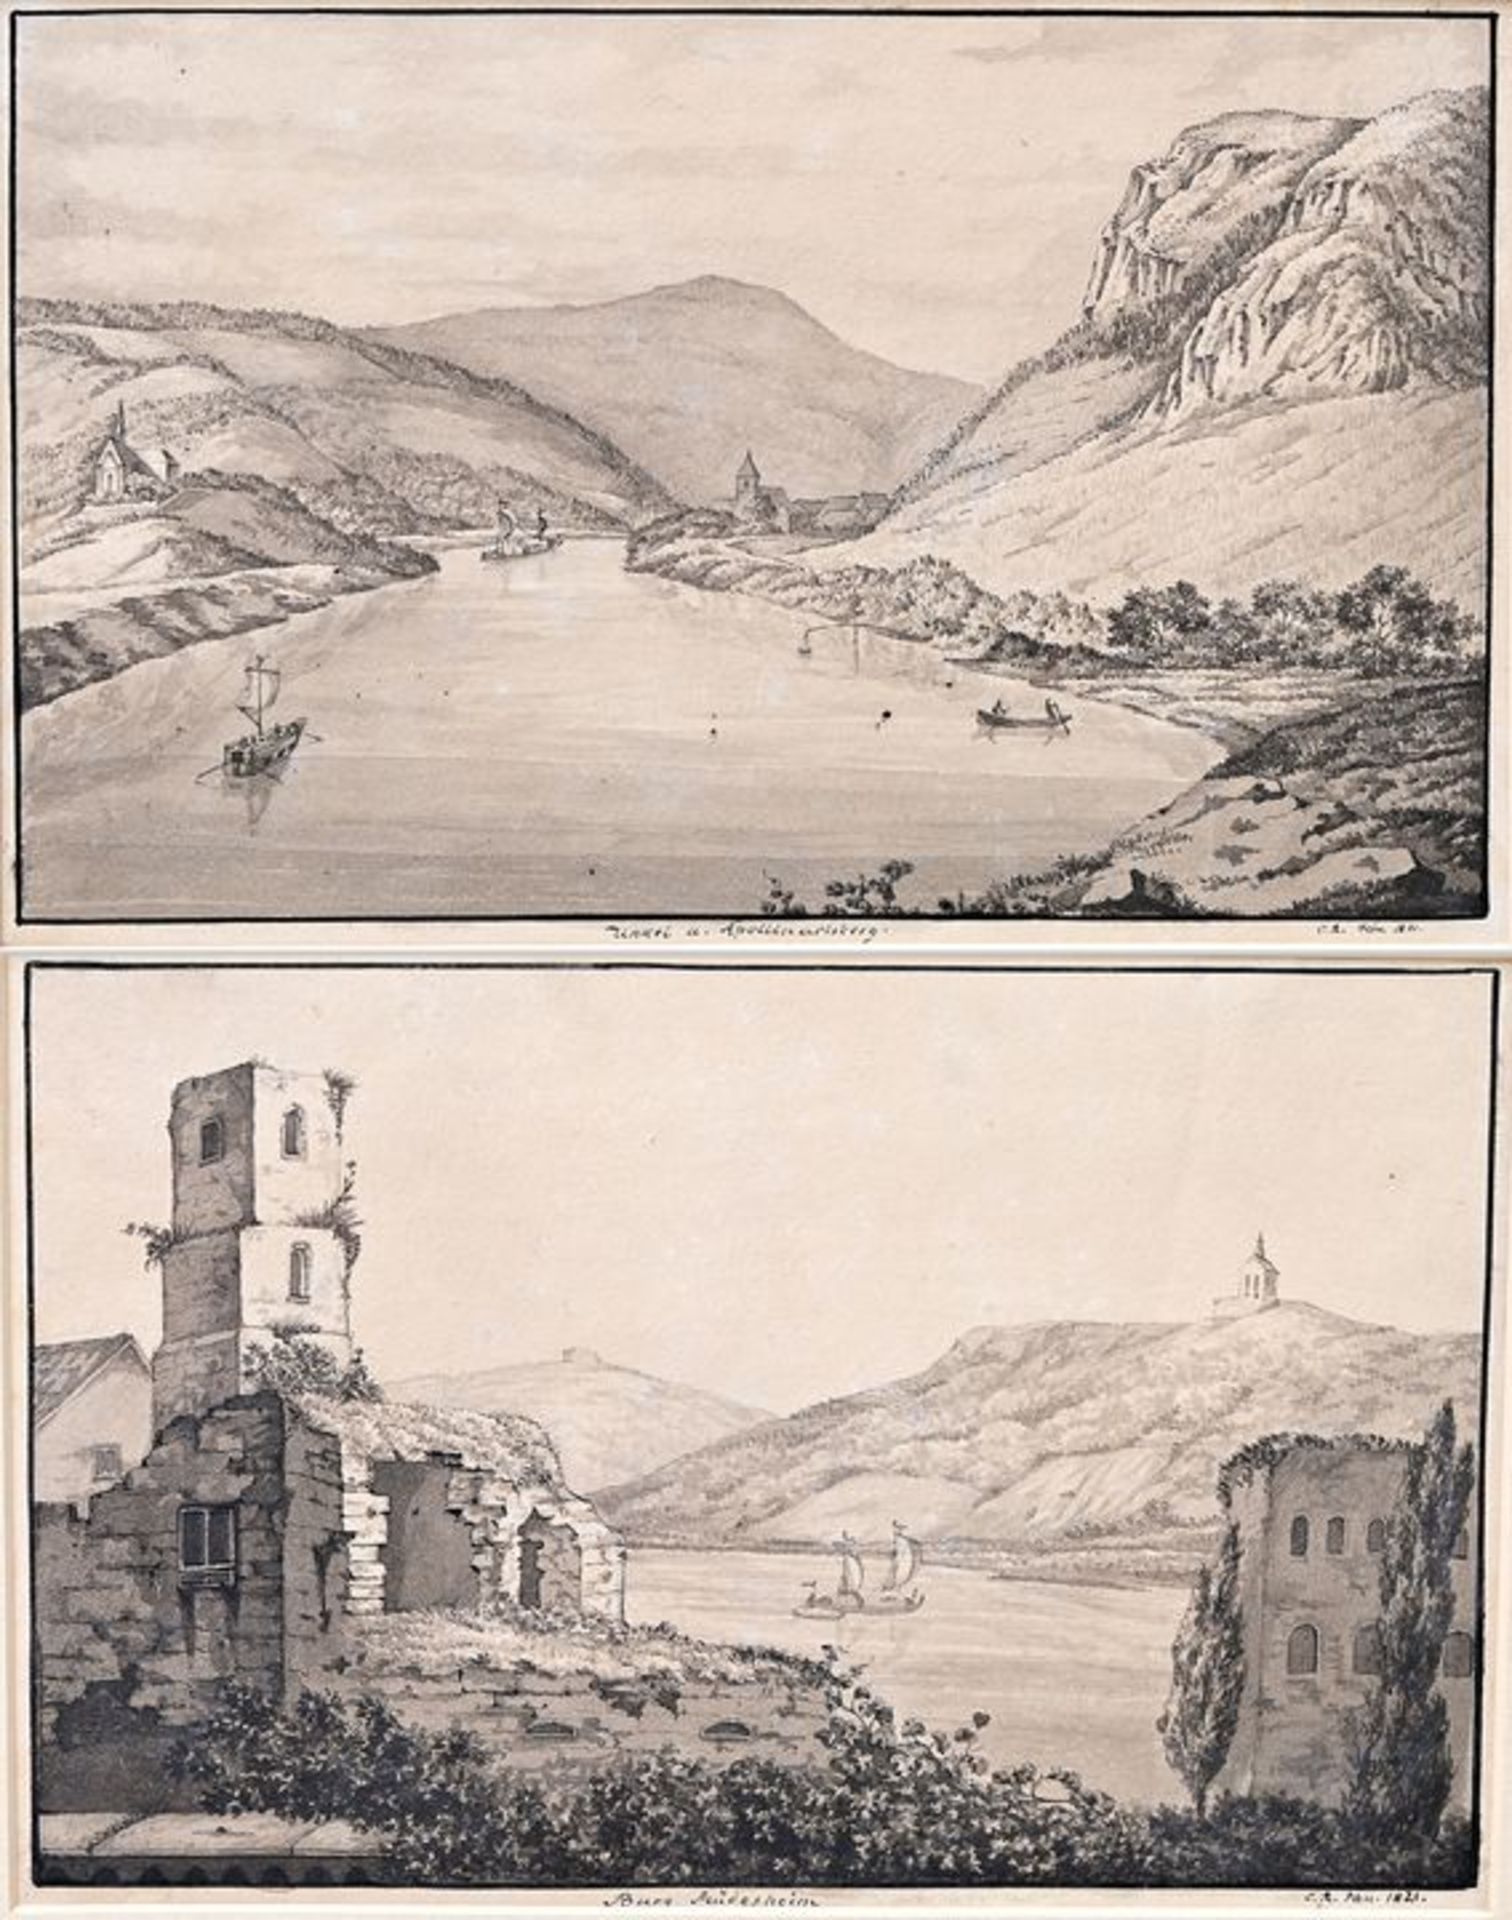 Zwei Rhein-Ansichten 1821 / Two scenes from the Rhine